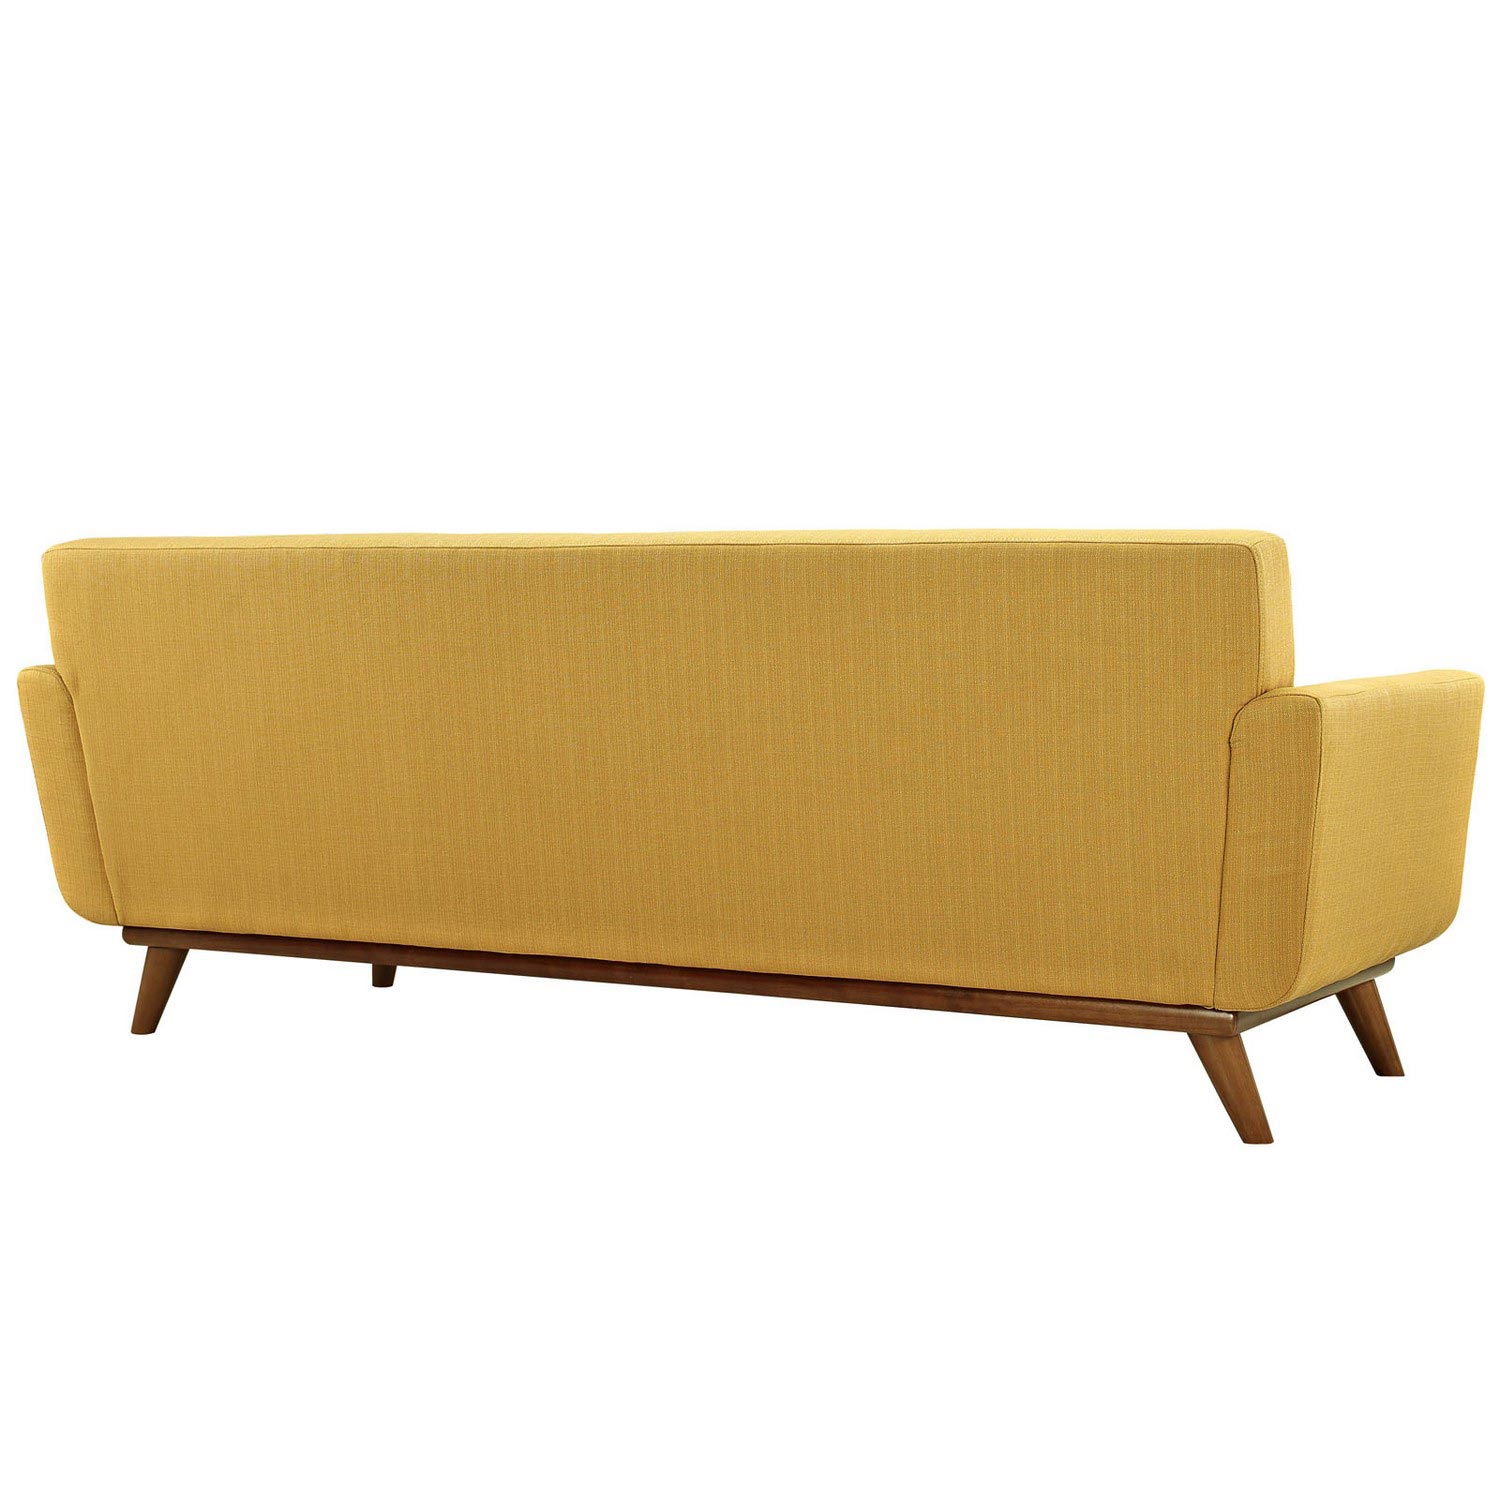 Modway Engage Upholstered Sofa - Citrus